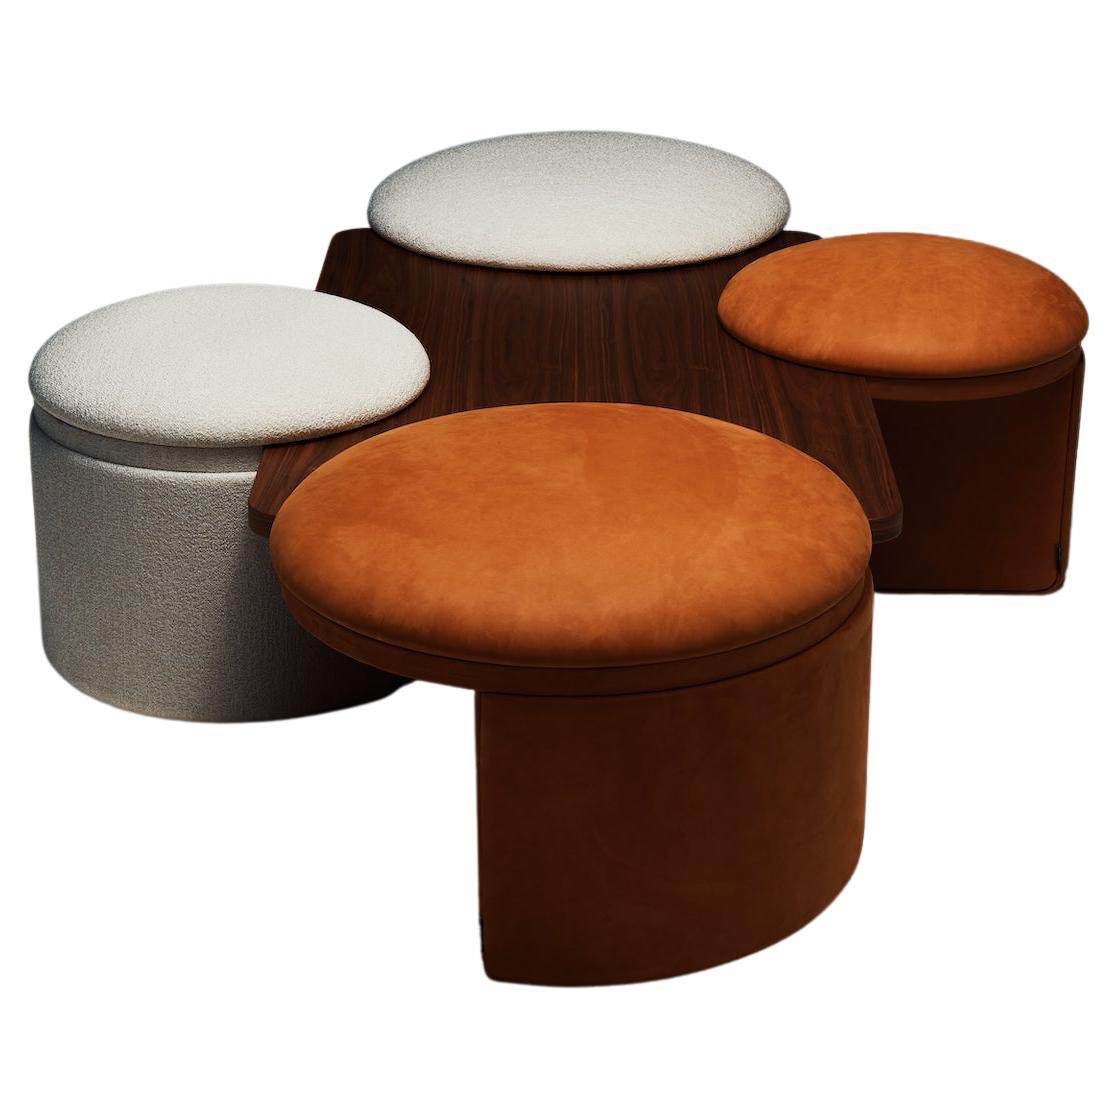 La Manufacture-Paris Amazone Table with Poufs Designed by Atelier Oï